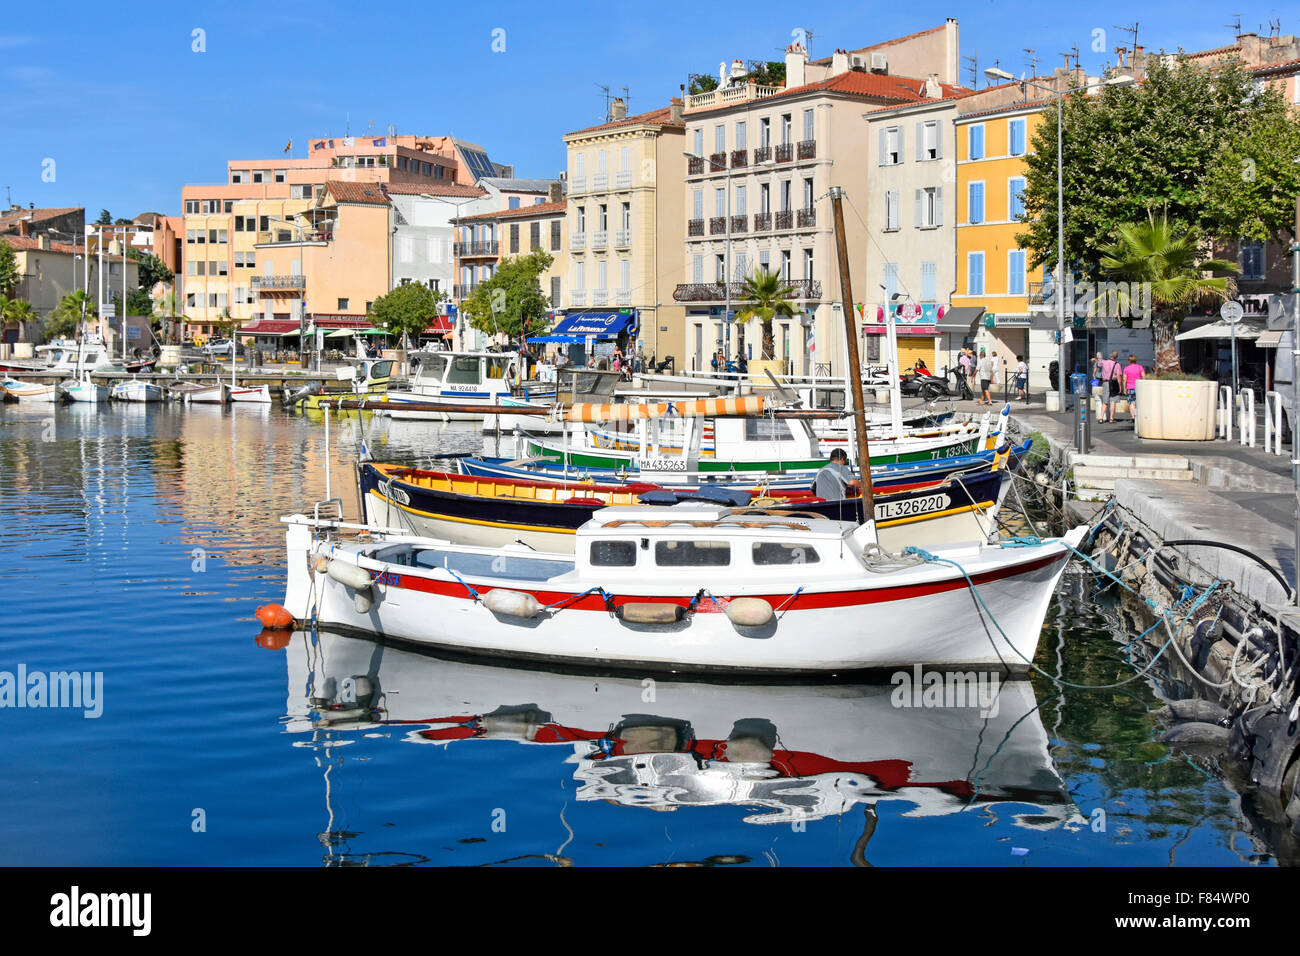 La Ciotat Francia Provenza vicino a Marseille Bouches du Rhone waterfront e parte del porto Foto Stock